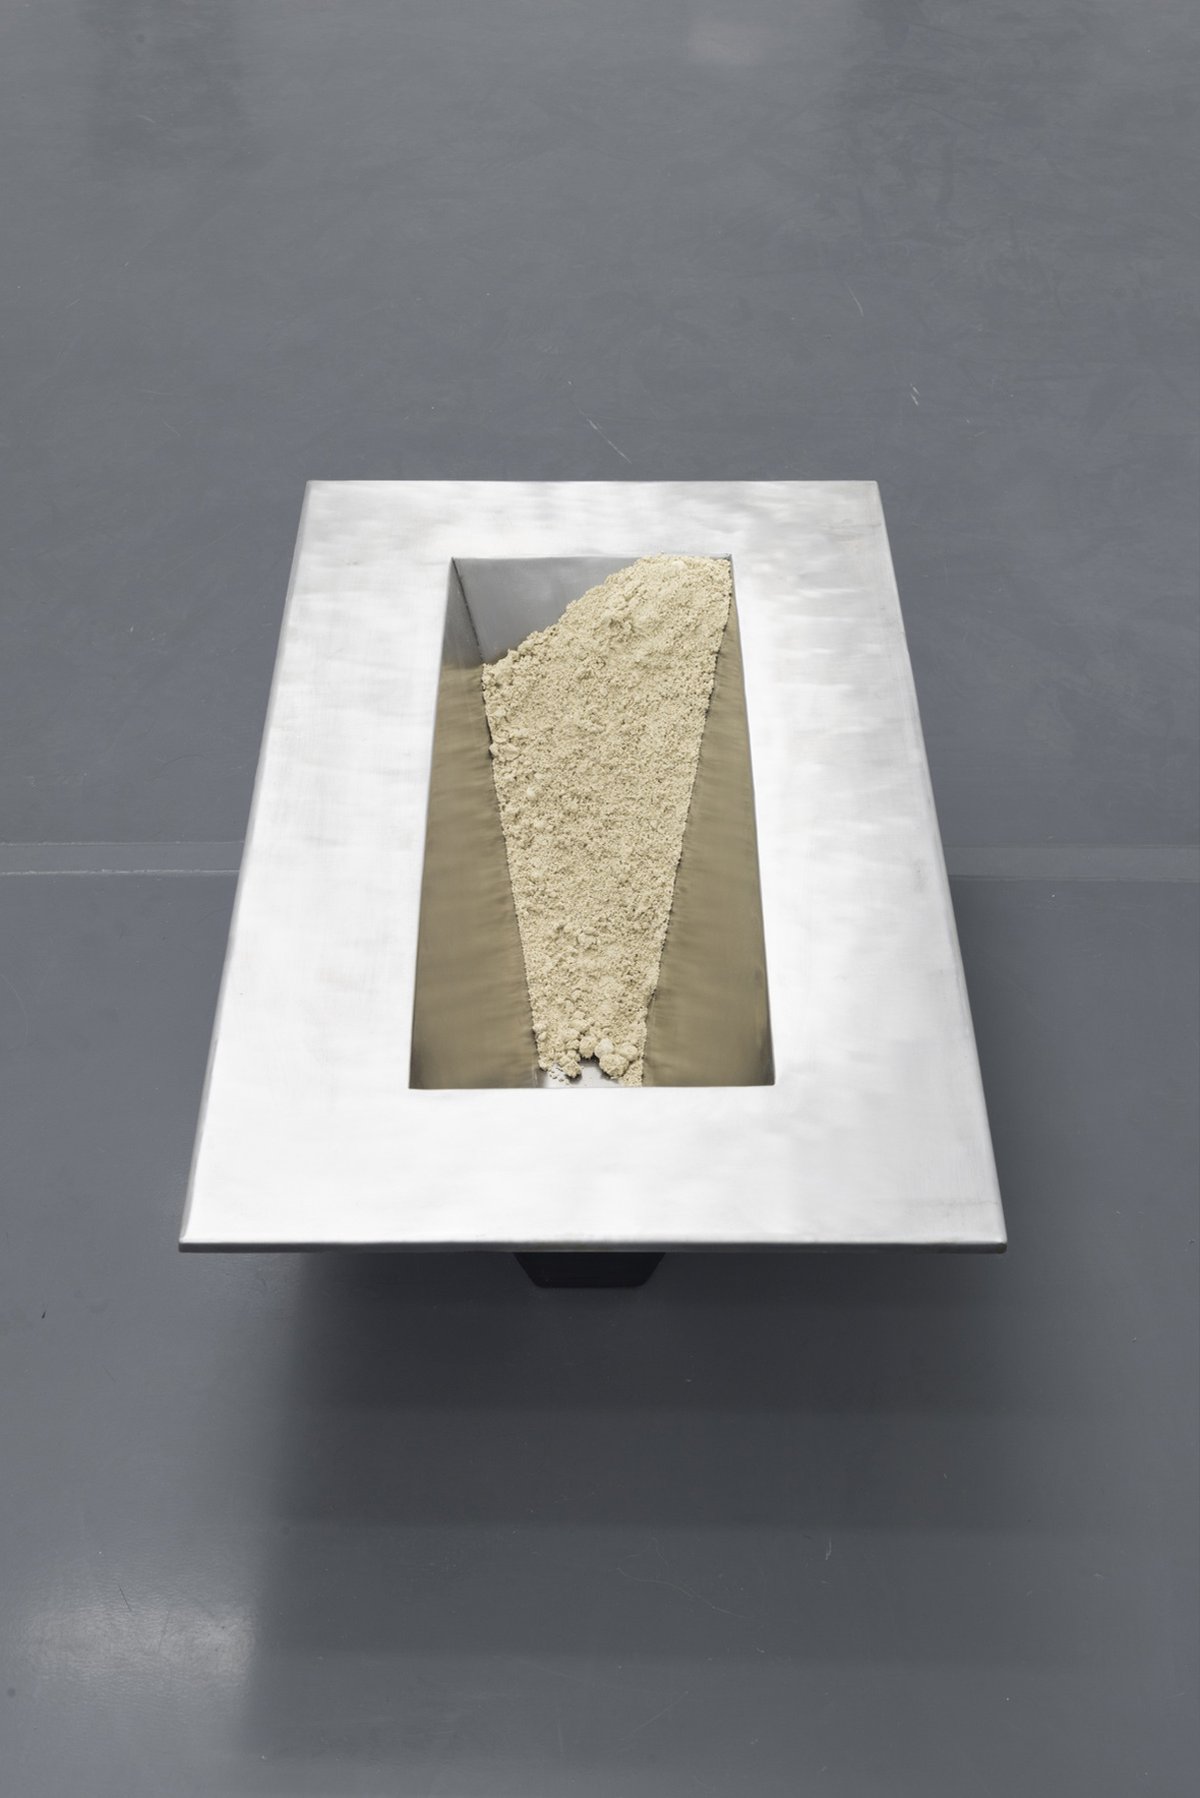 Lena HenkeIhre Spülküche, 2016Metal, sand, silicone98.5 x 53.5 x 30 cm